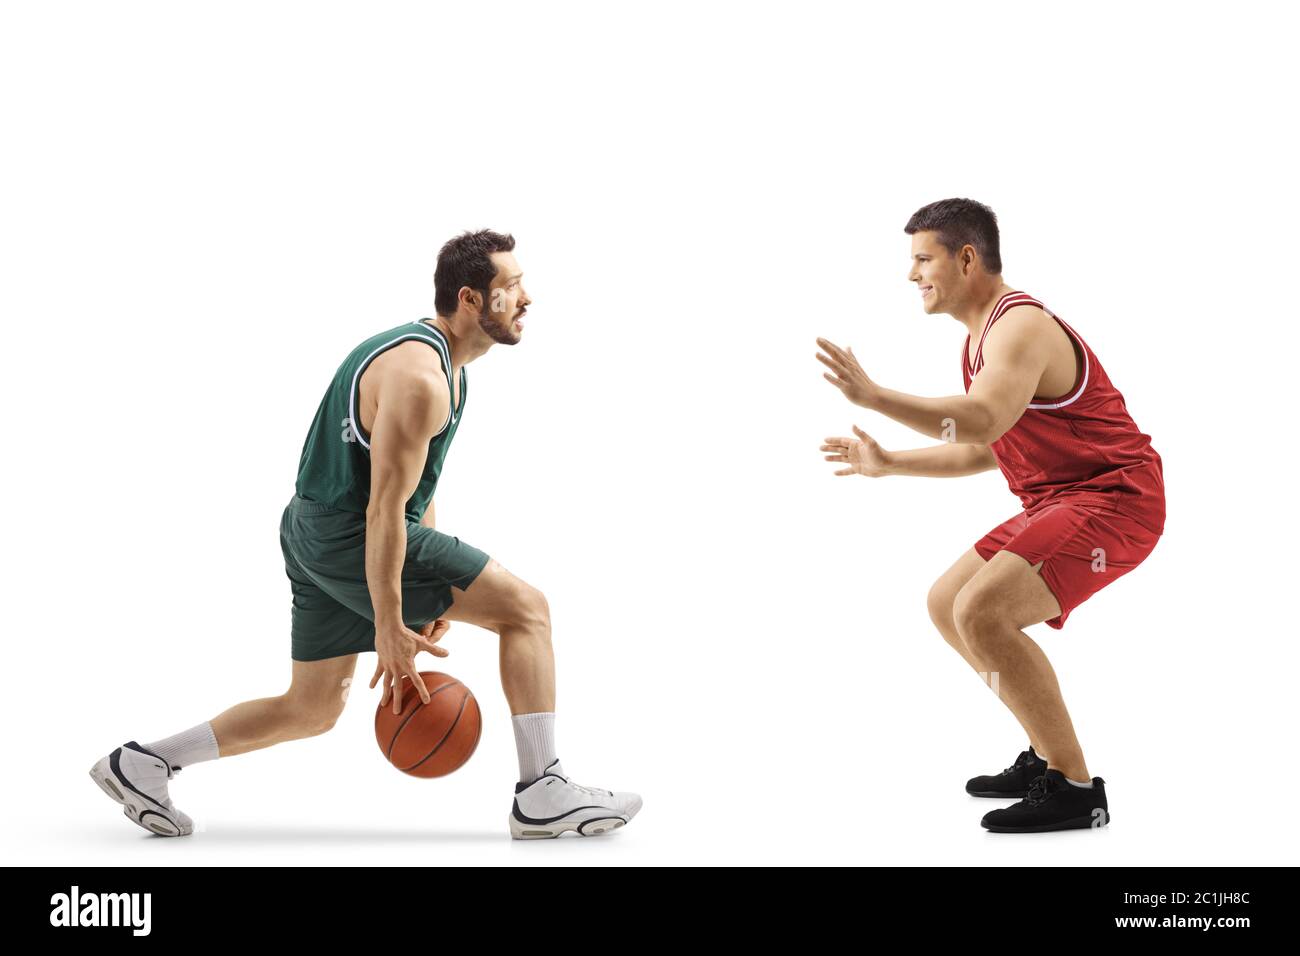 Photo de profil pleine longueur de deux joueurs de basket-ball professionnels jouant au basket-ball isolés sur fond blanc Banque D'Images